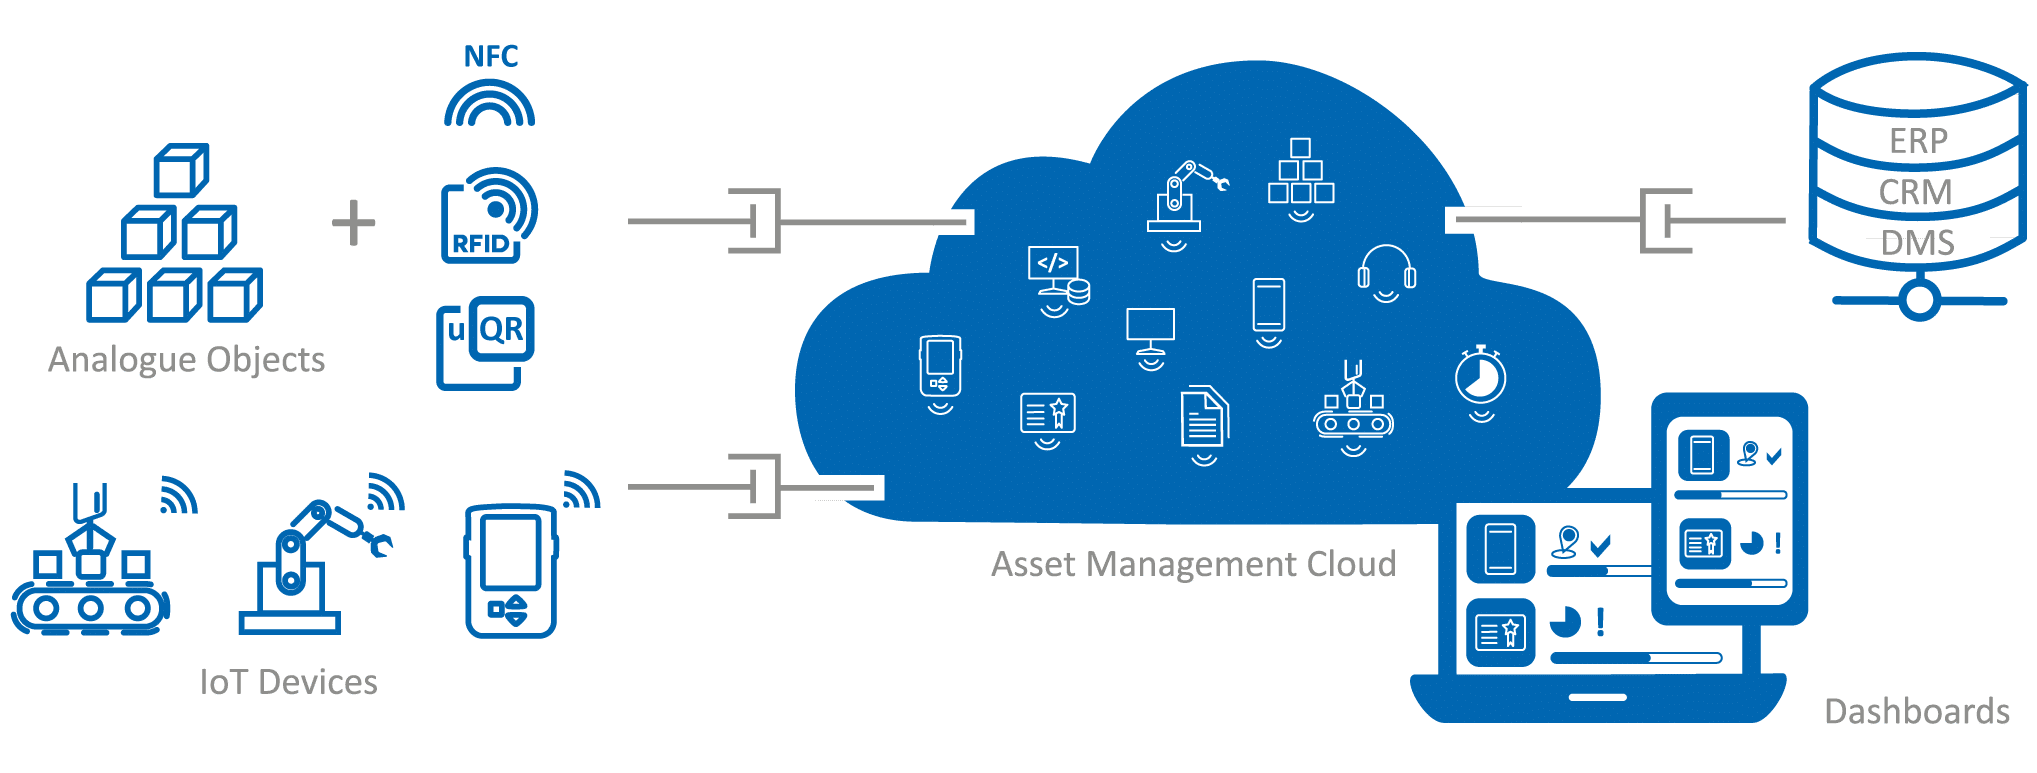 Schaubild: Assets & Work Management Cloud